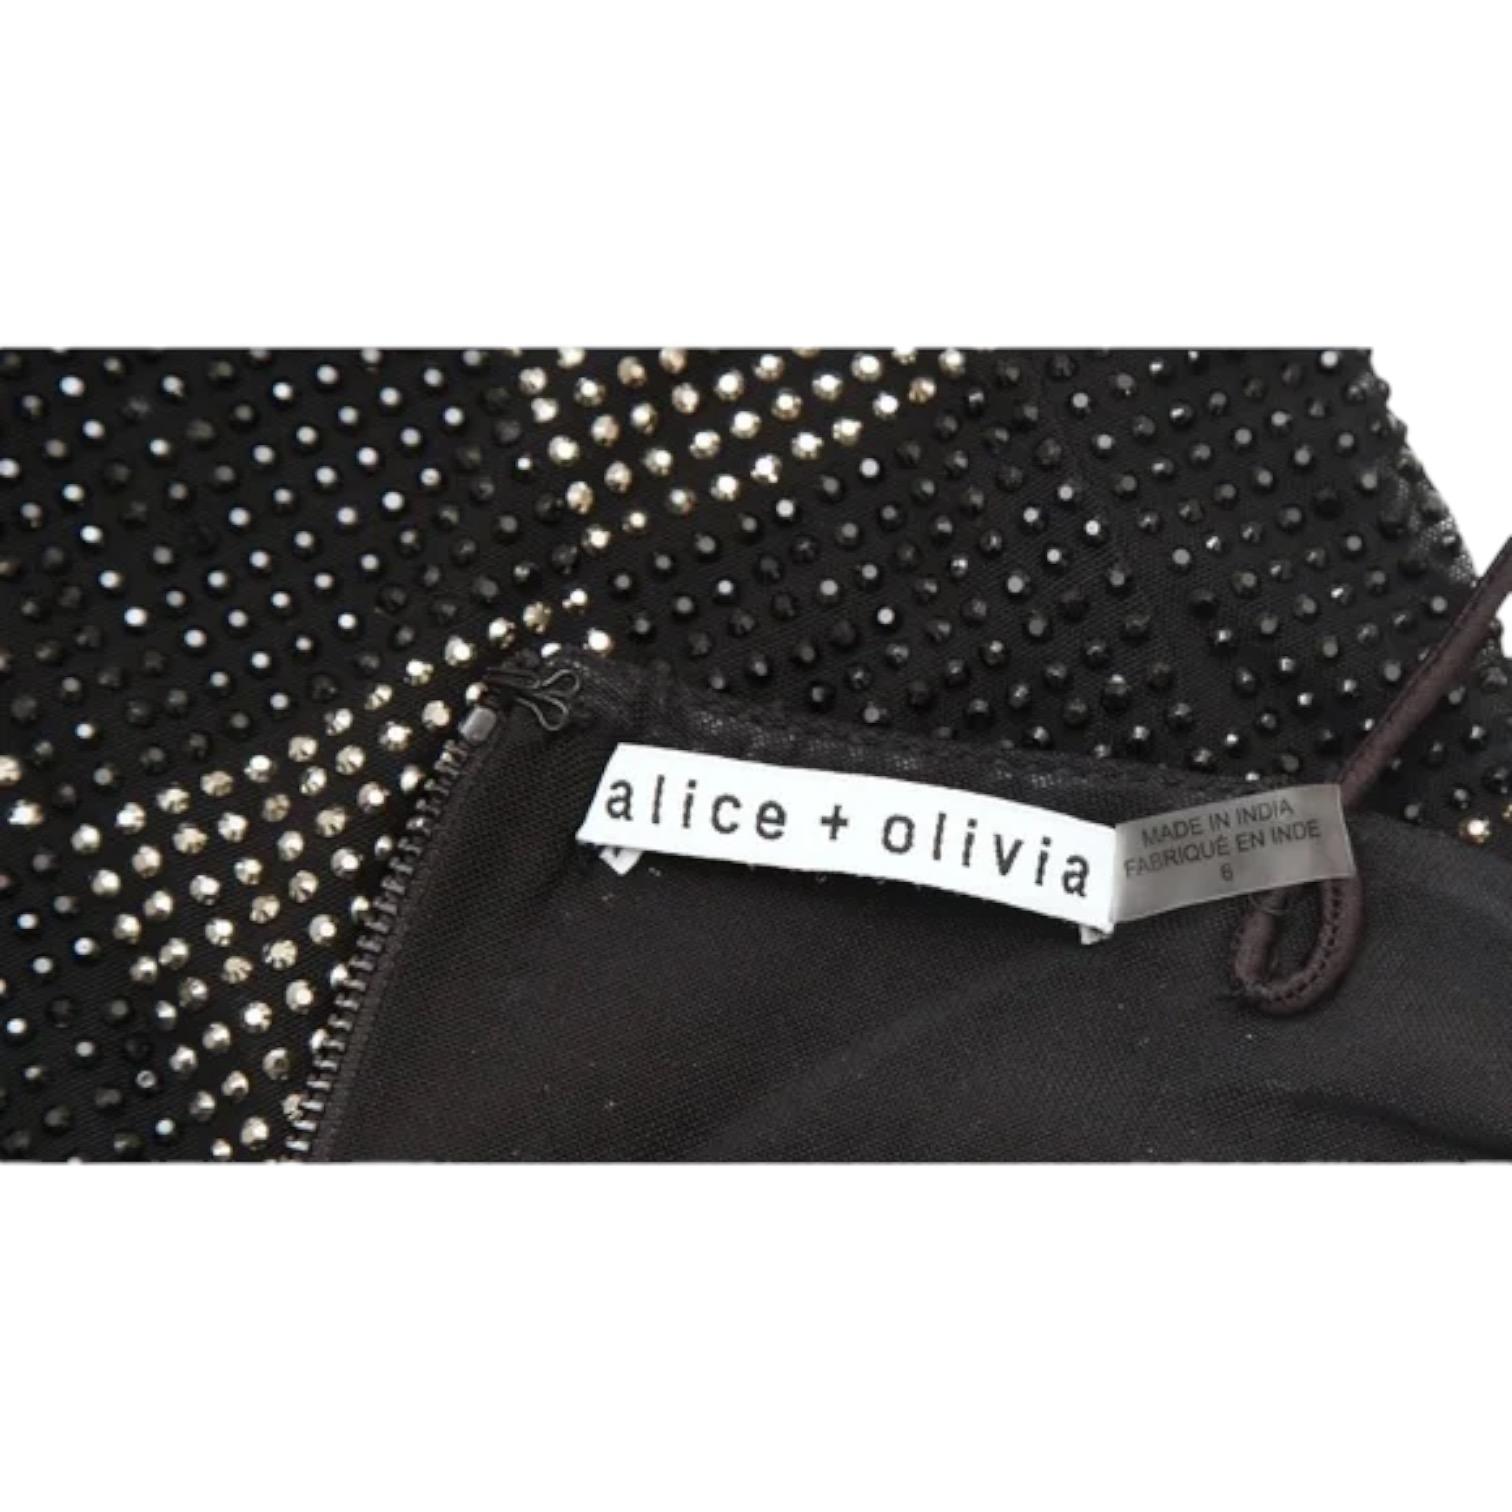 ALICE + OLIVIA Black Mini Dress NELLE Spaghetti Strap Checkerboard Sz 6 $595 For Sale 2